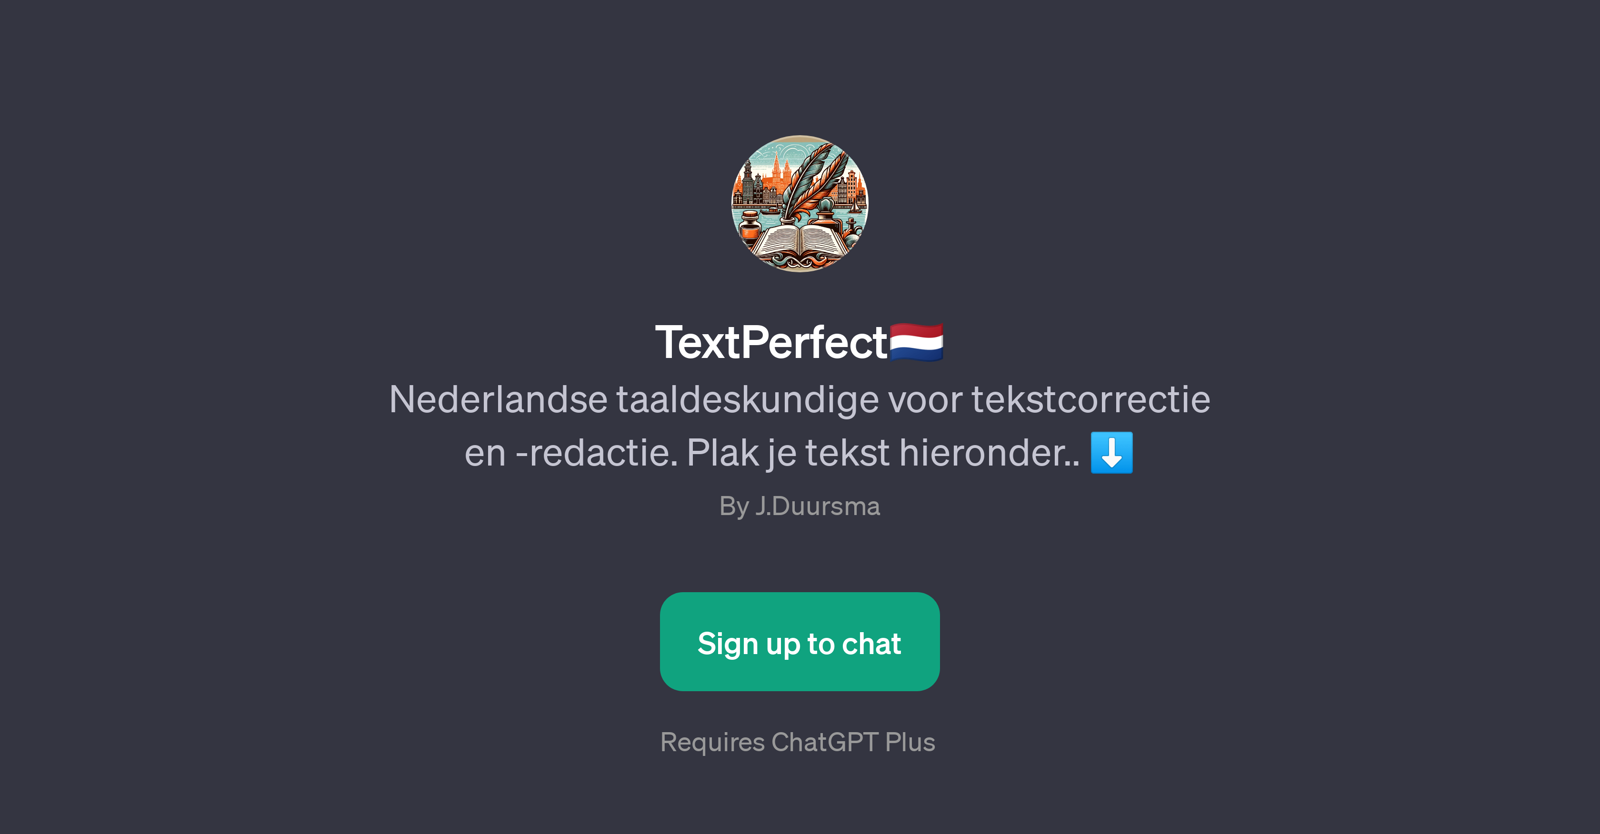 TextPerfect website